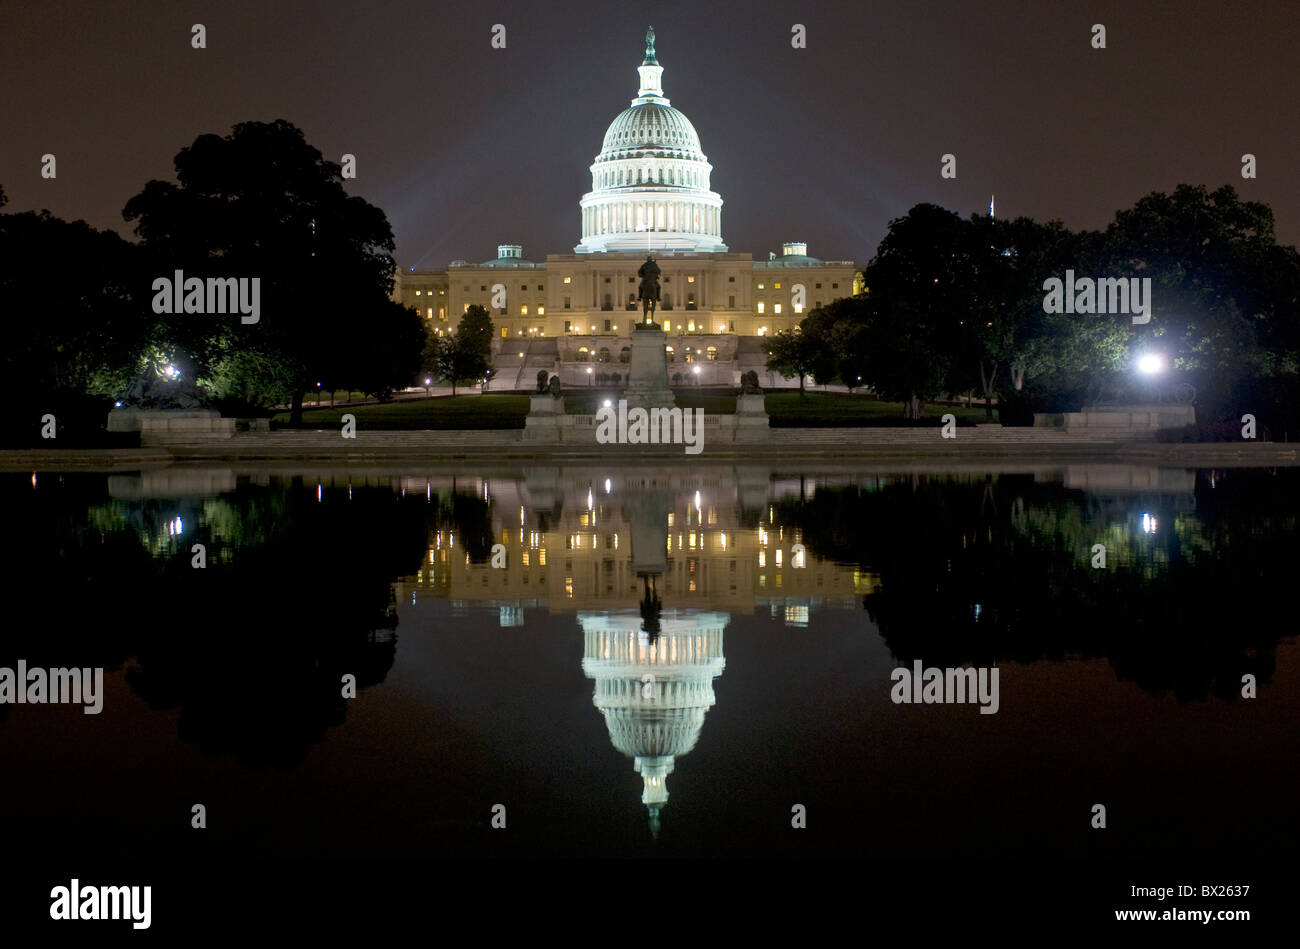 Eine Nacht Zeit Blick auf US-Kapitol Ands es hat Reflexion auf dem Kapitol Widerspiegelnder Teich. Stockfoto